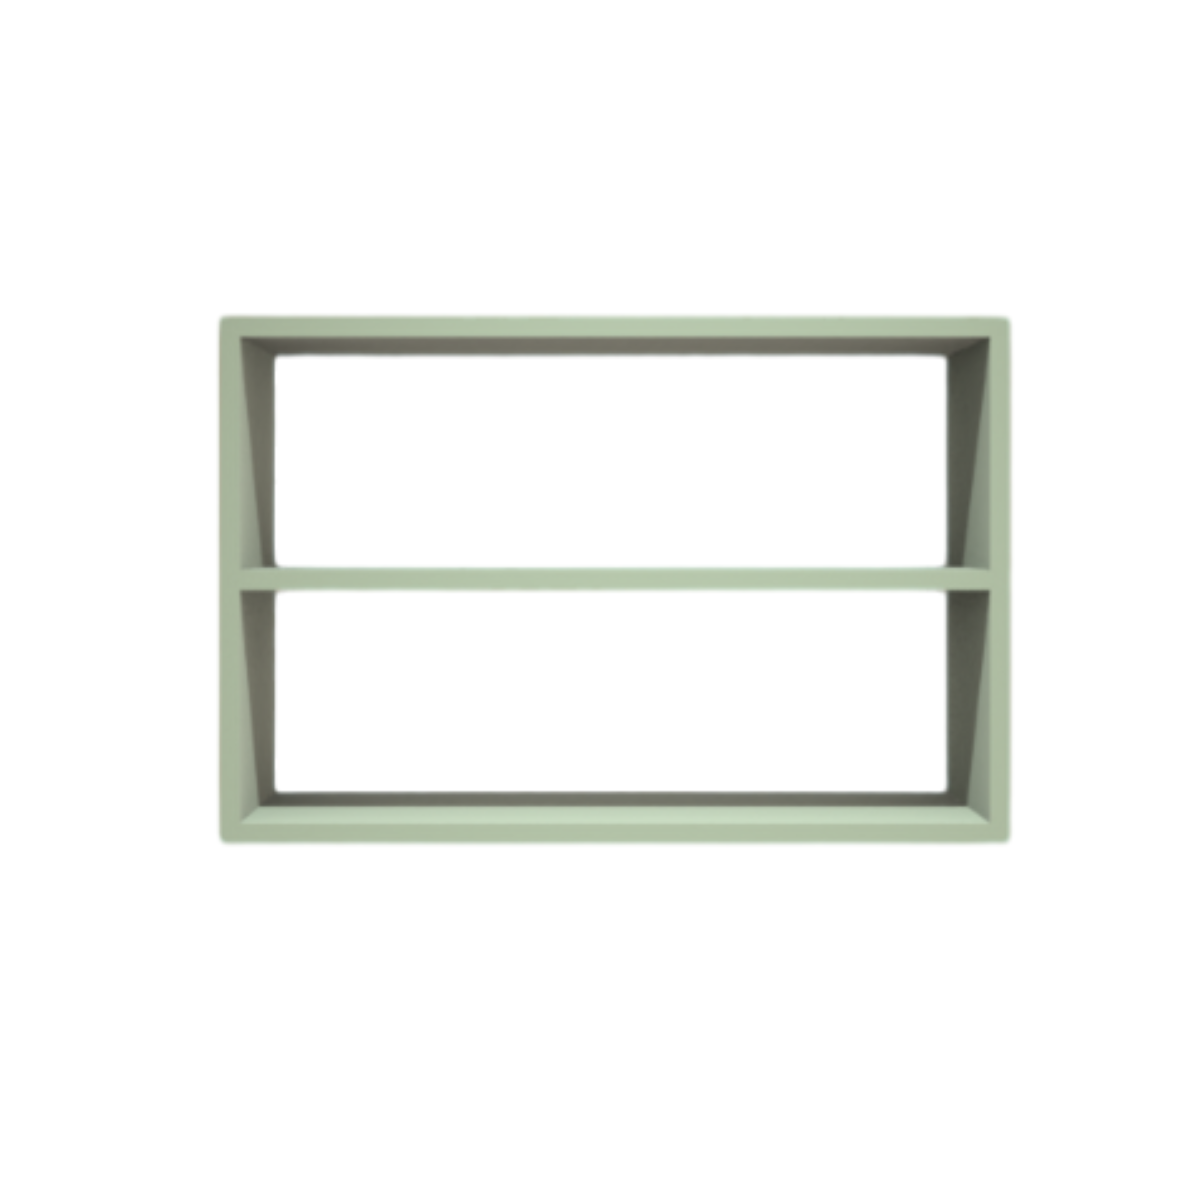 Nicho Decorativo Retangular com Prateleira 60x40x20 Mdf Plancasa:verde Jade - 2